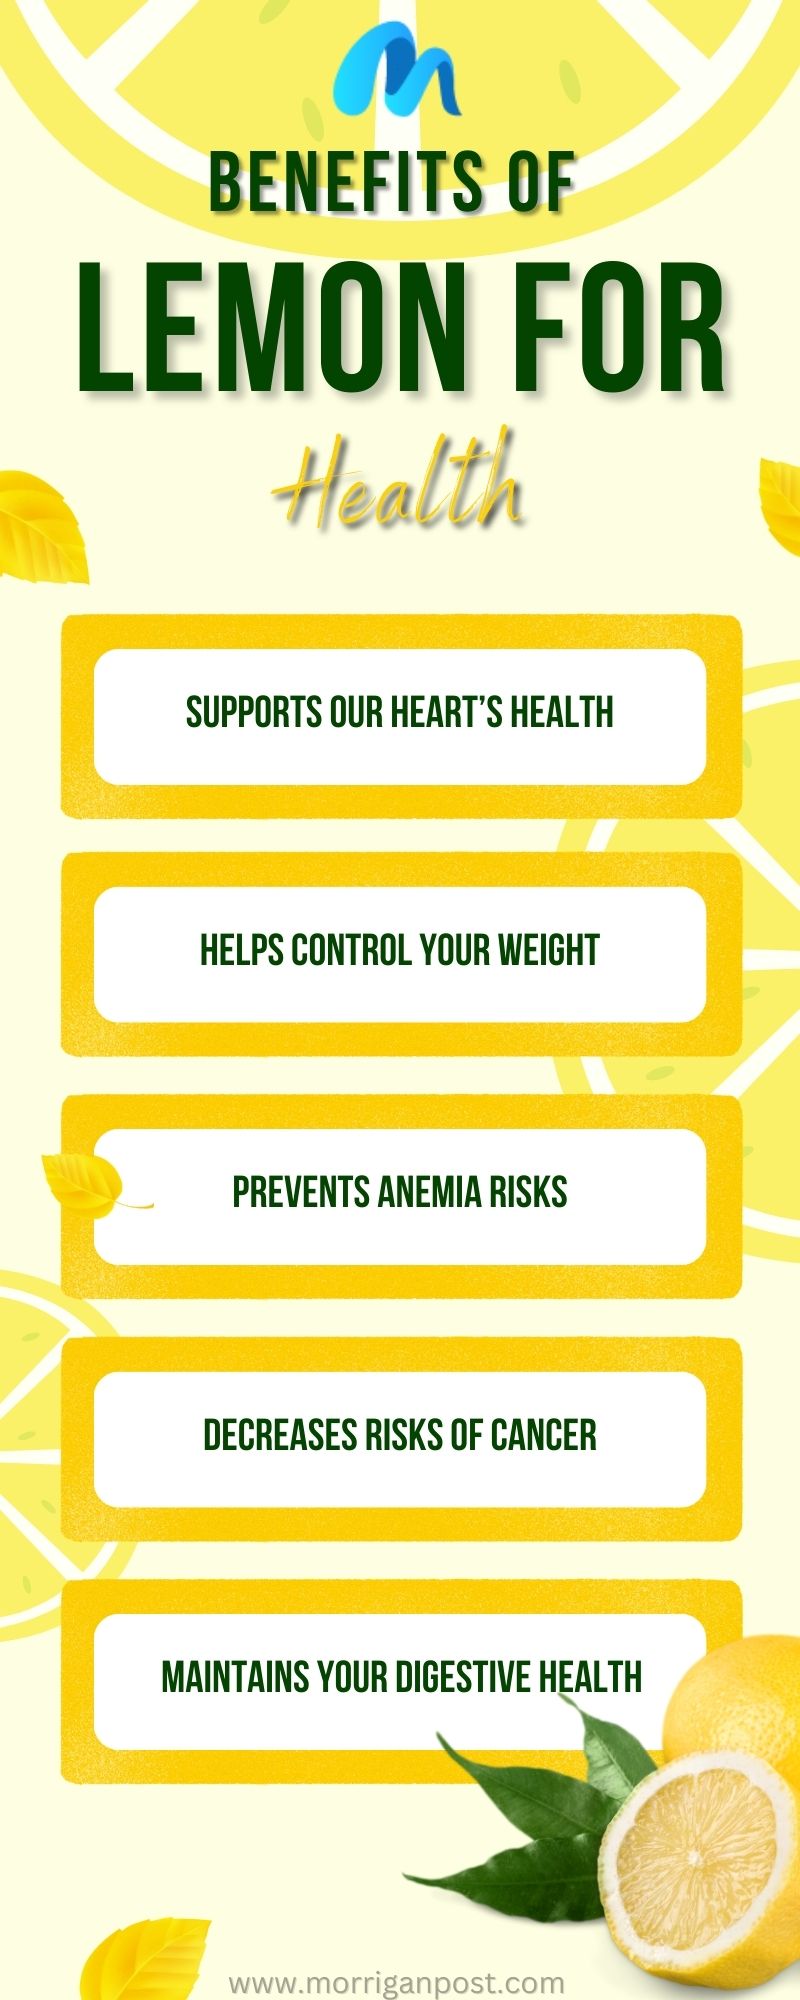 Benefits of lemon for health